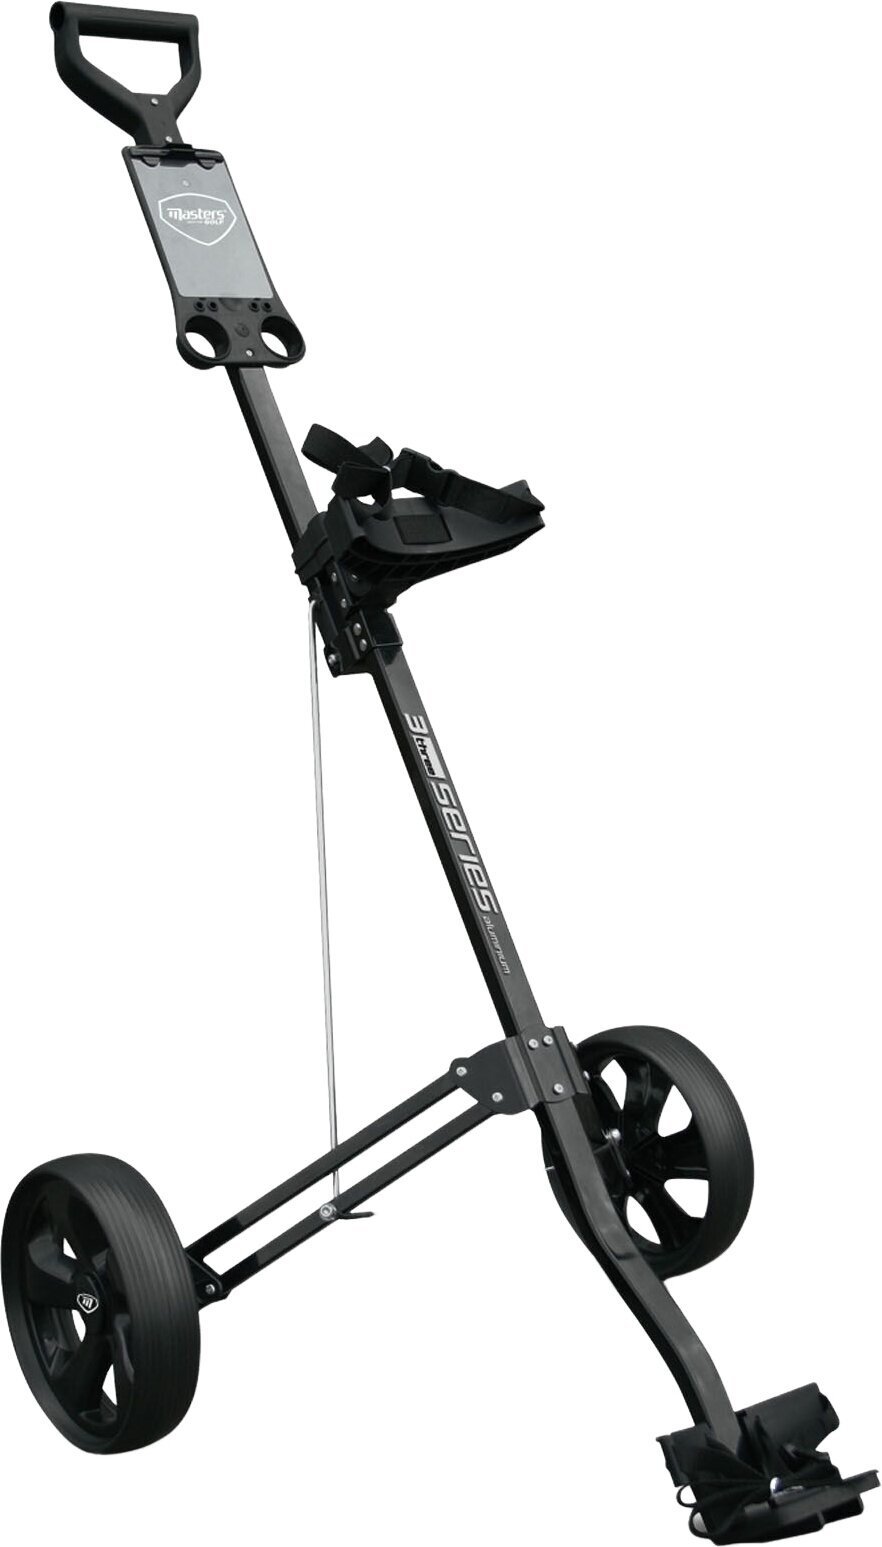 Manuell golfvagn Masters Golf 3 Series Aluminium 2 Wheel Pull Trolley Black Manuell golfvagn